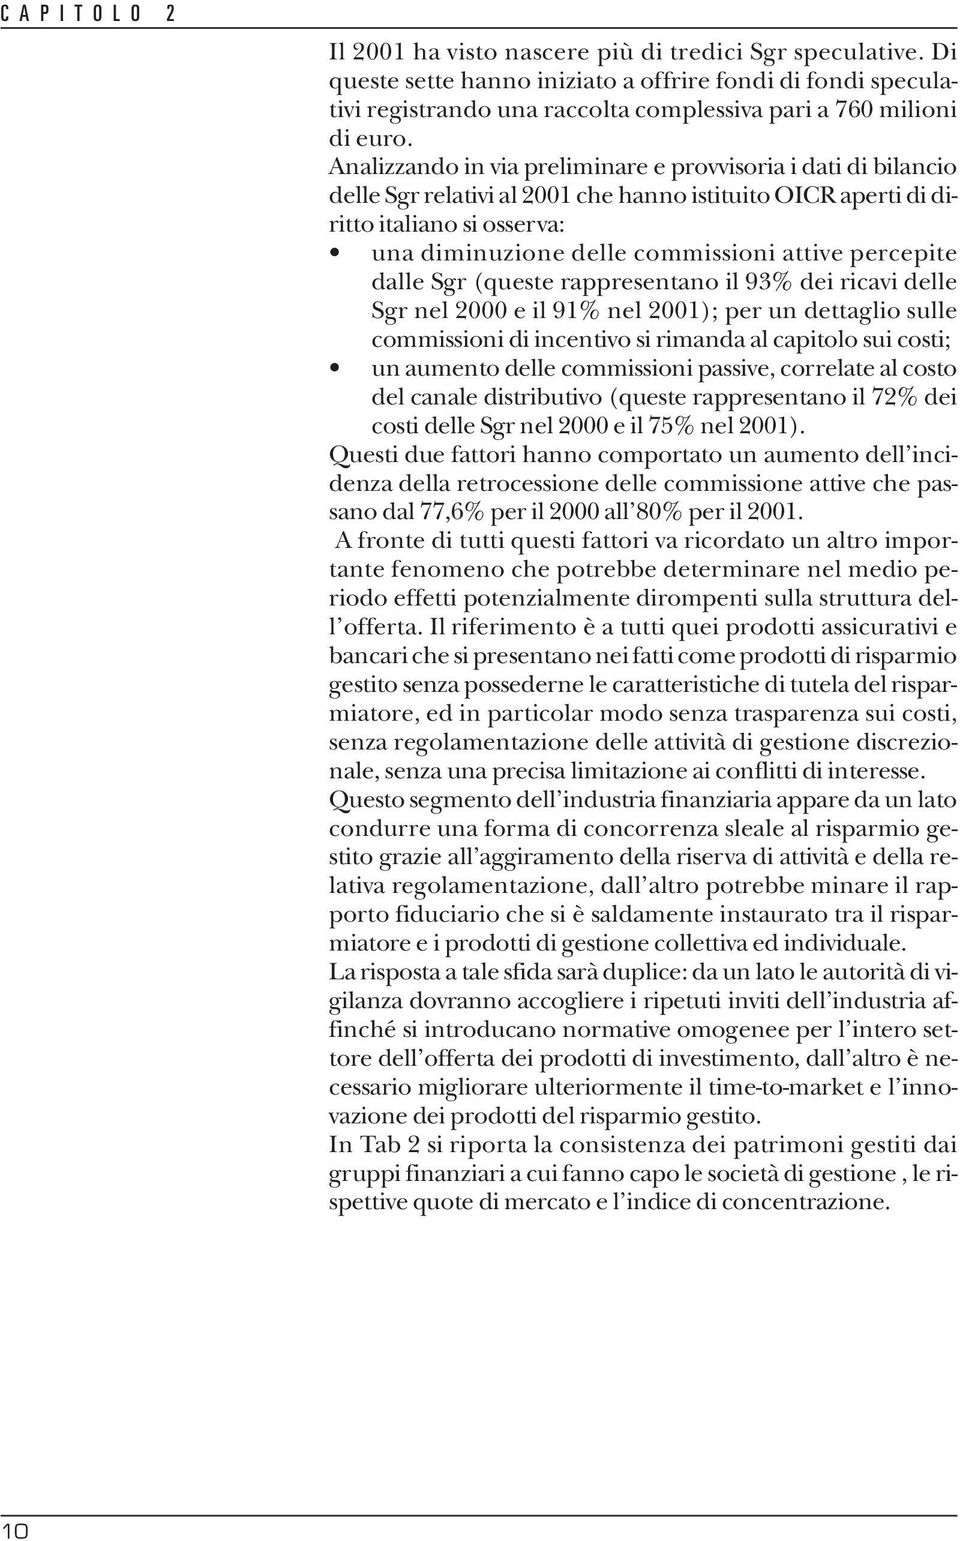 Analizzando in via preliminare e provvisoria i dati di bilancio delle Sgr relativi al 2001 che hanno istituito OICR aperti di diritto italiano si osserva: una diminuzione delle commissioni attive